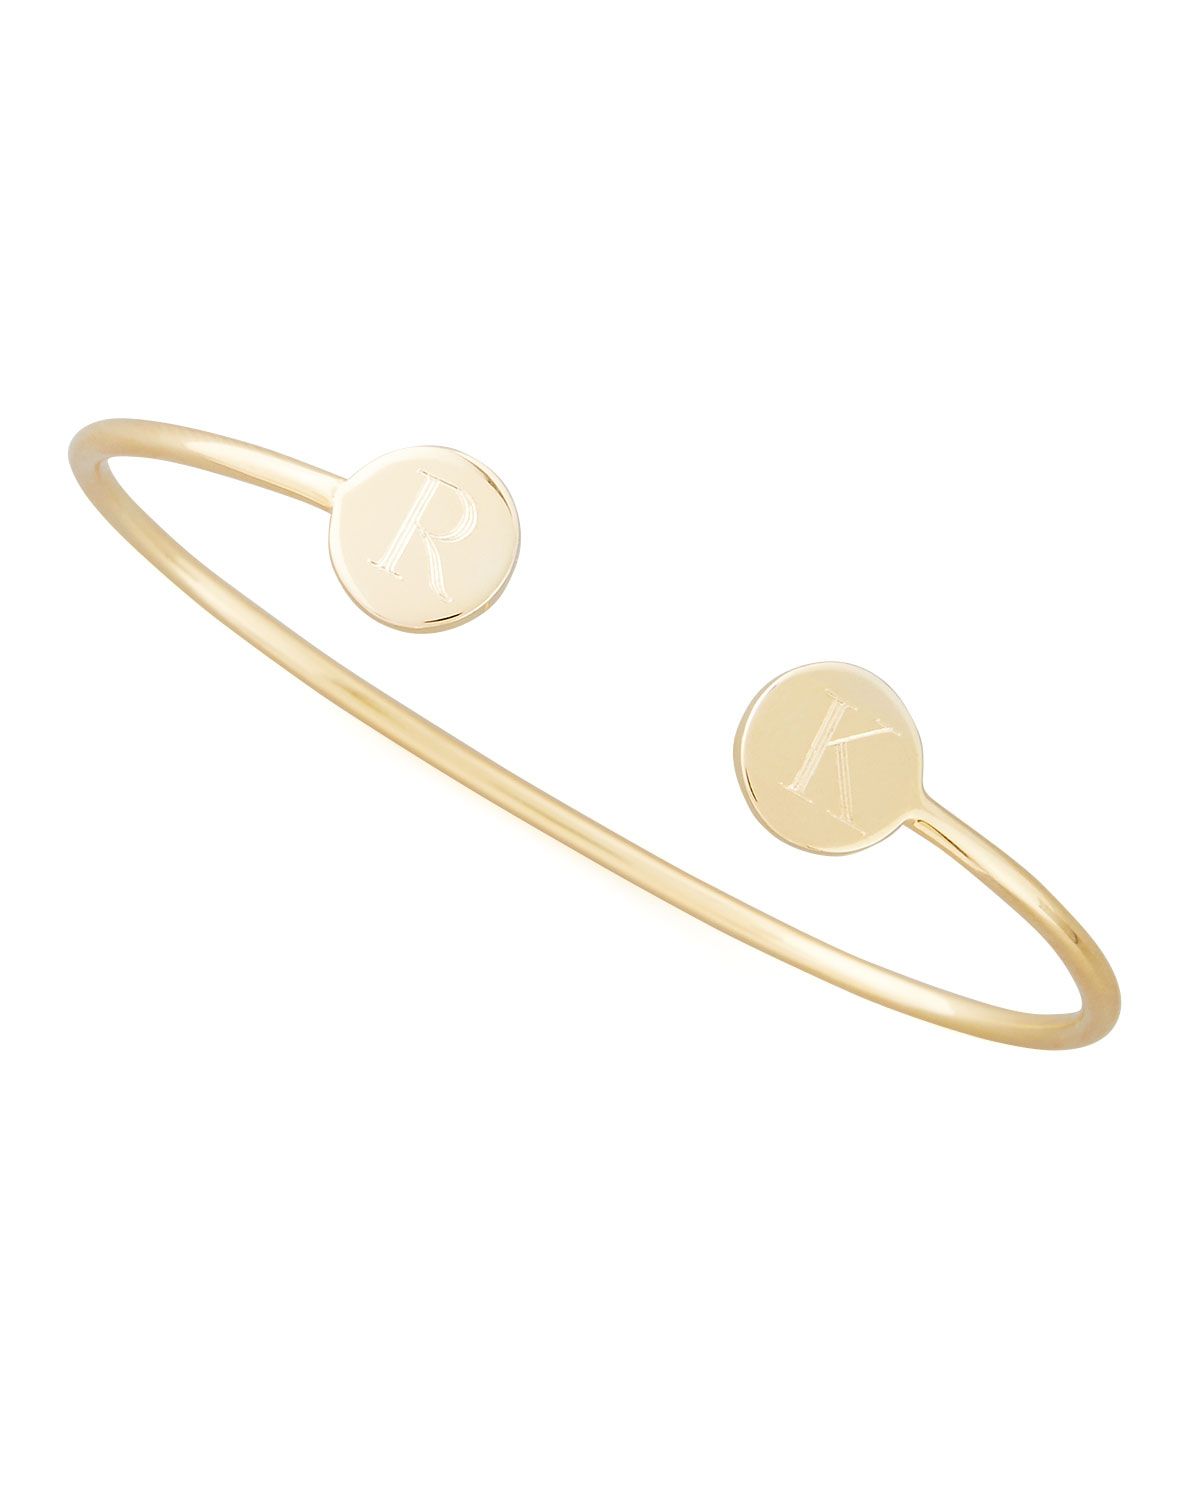 Elle Round Double-Initial Bracelet, GoldElle Round Double-Initial Bracelet, Silver | Neiman Marcus